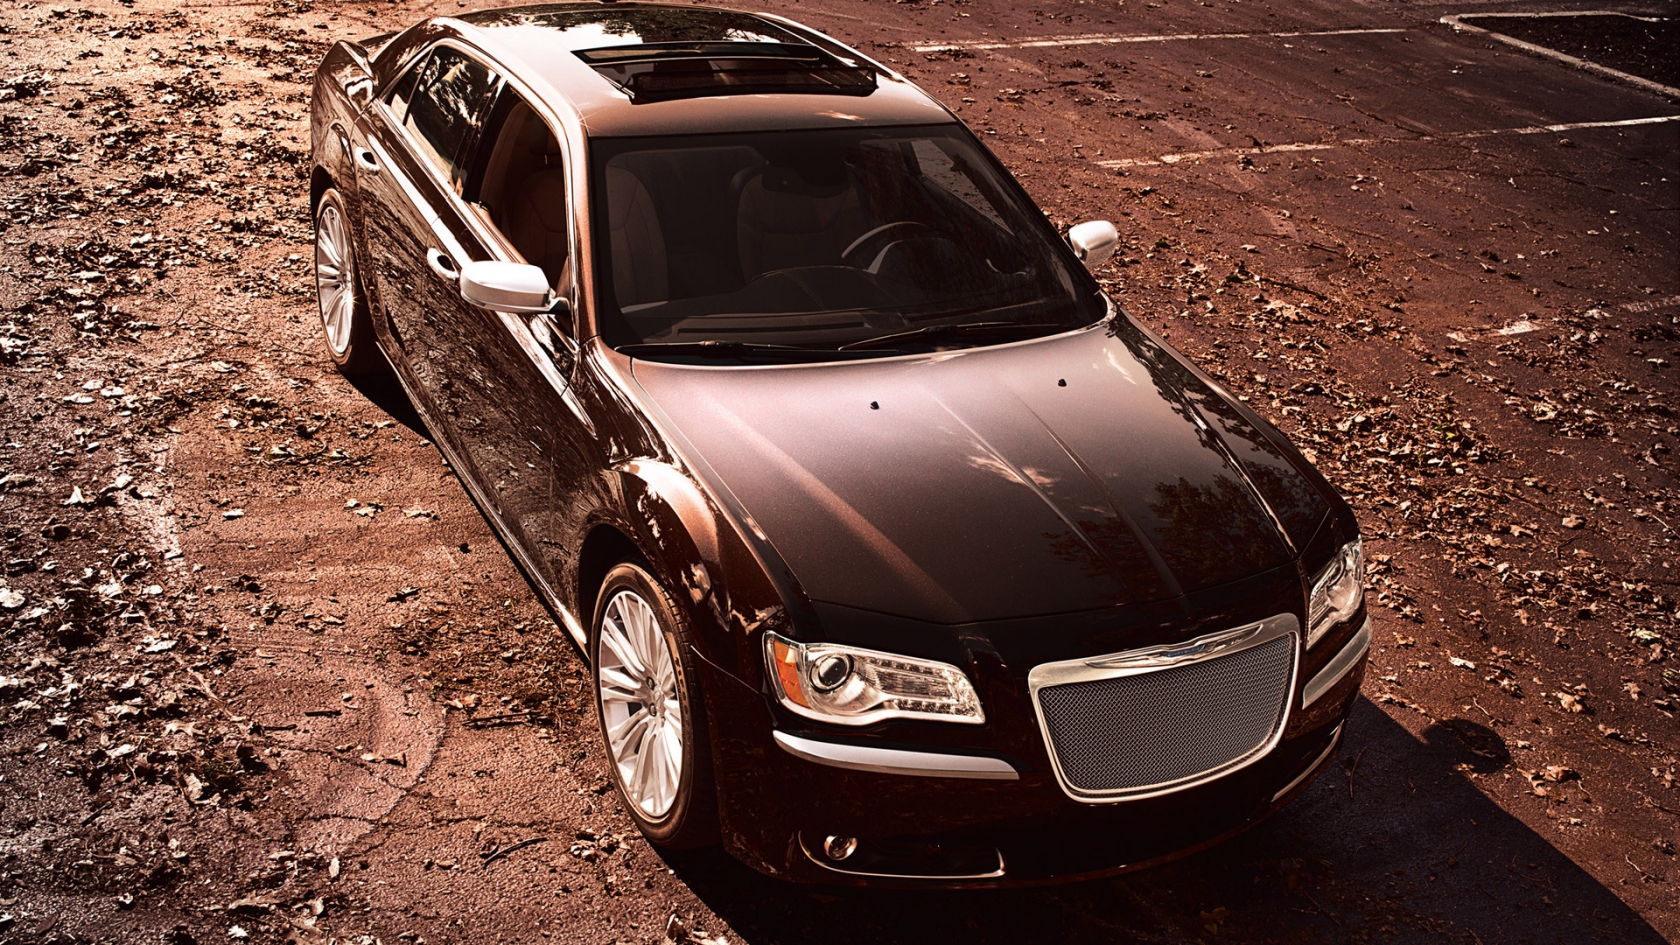 2012 Chrysler 300 Luxury Series for 1680 x 945 HDTV resolution